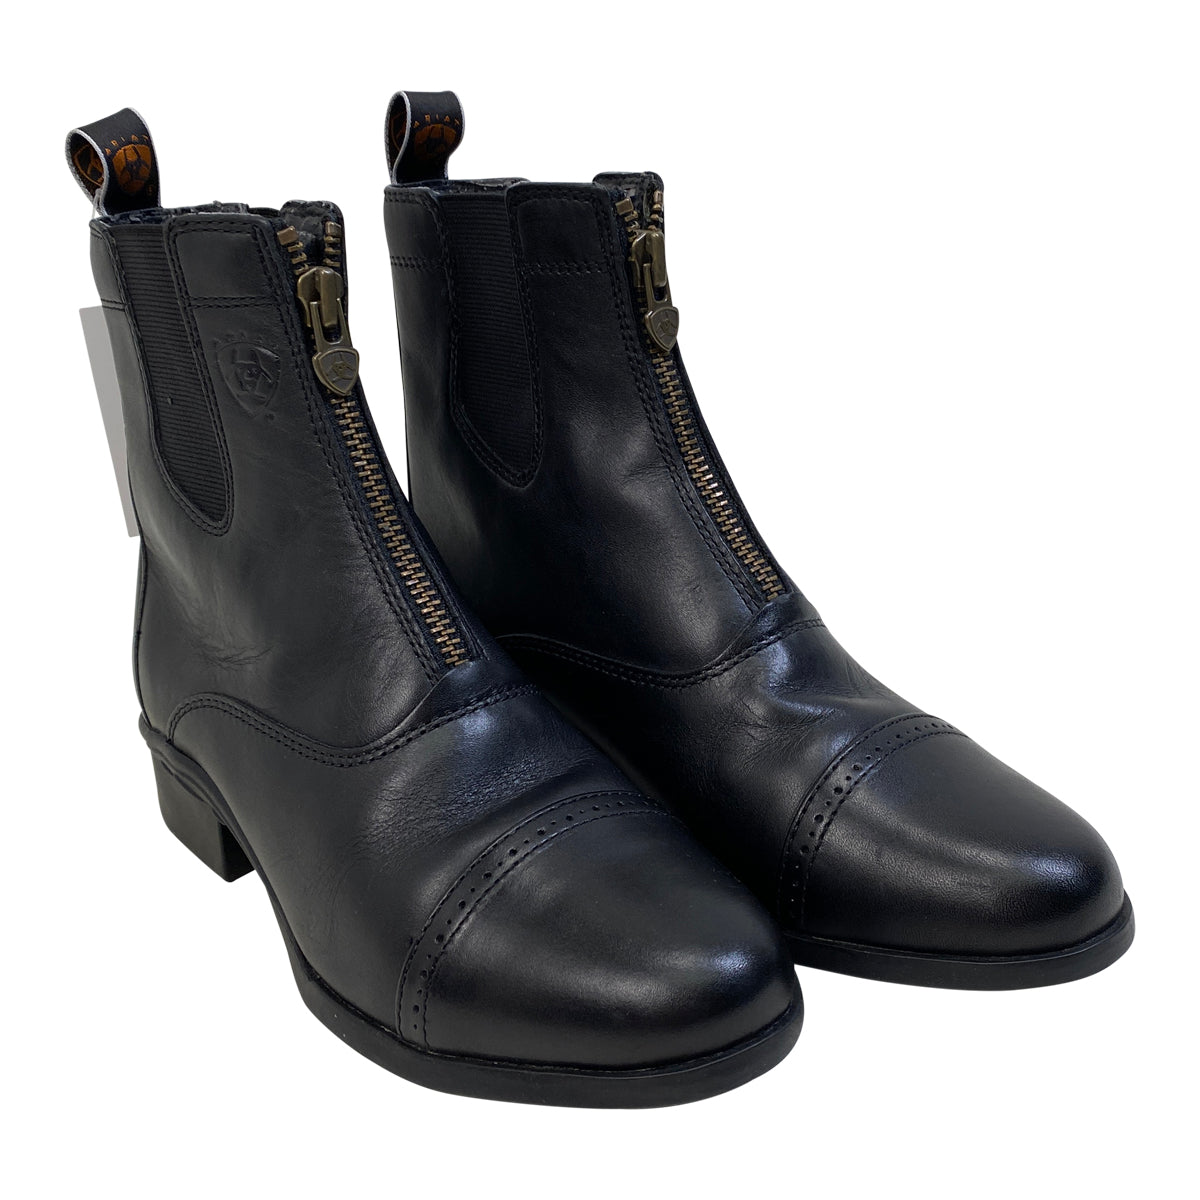 Ariat Heritage III Zip Paddock Boots in Black